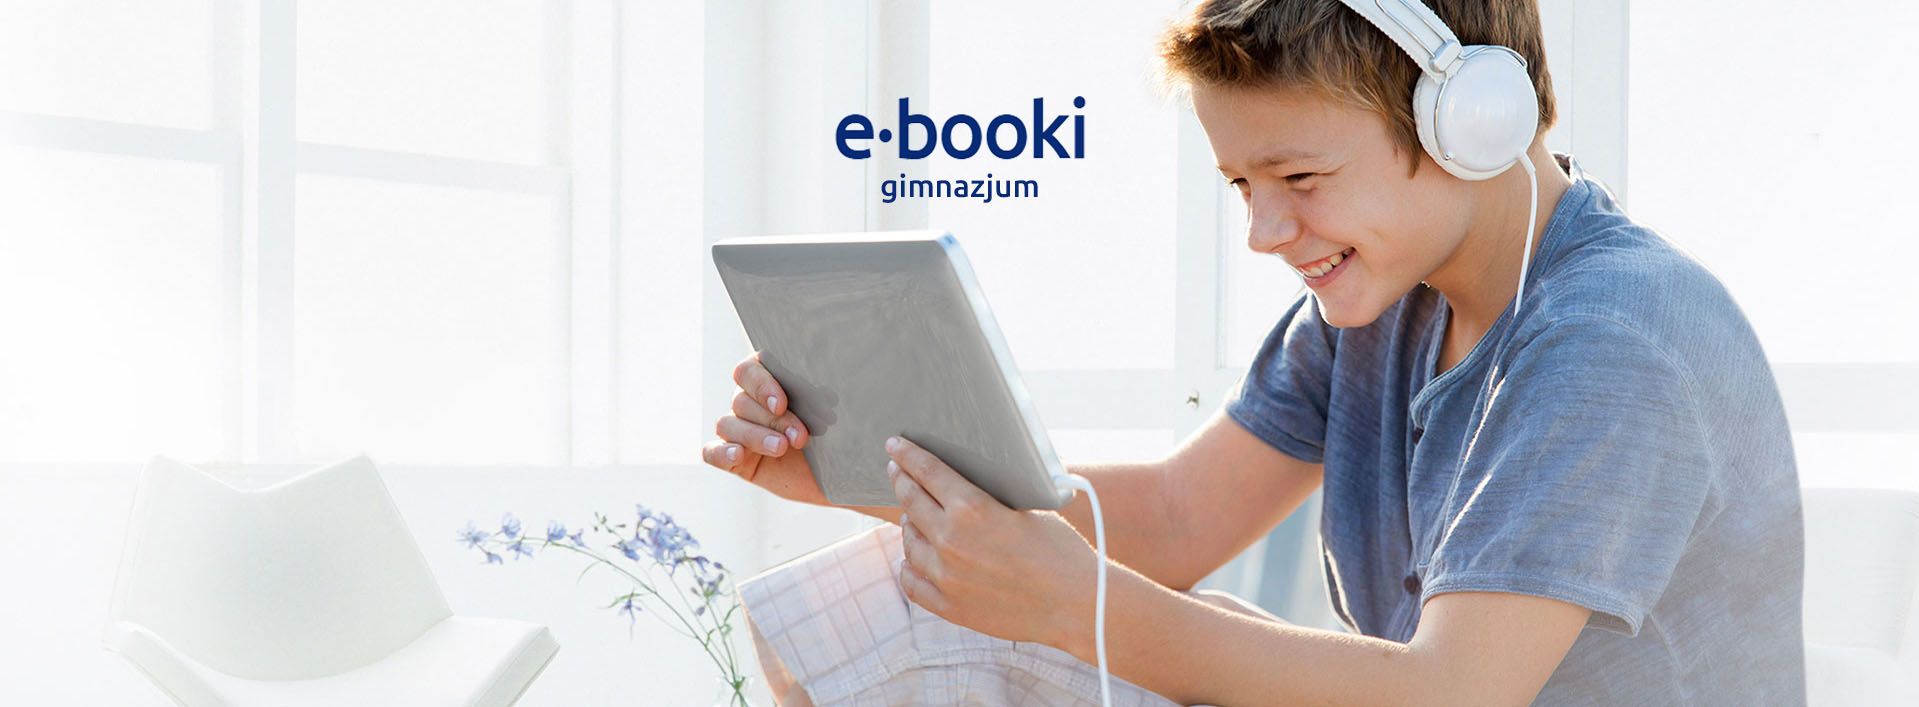 e-booki gimnazjum